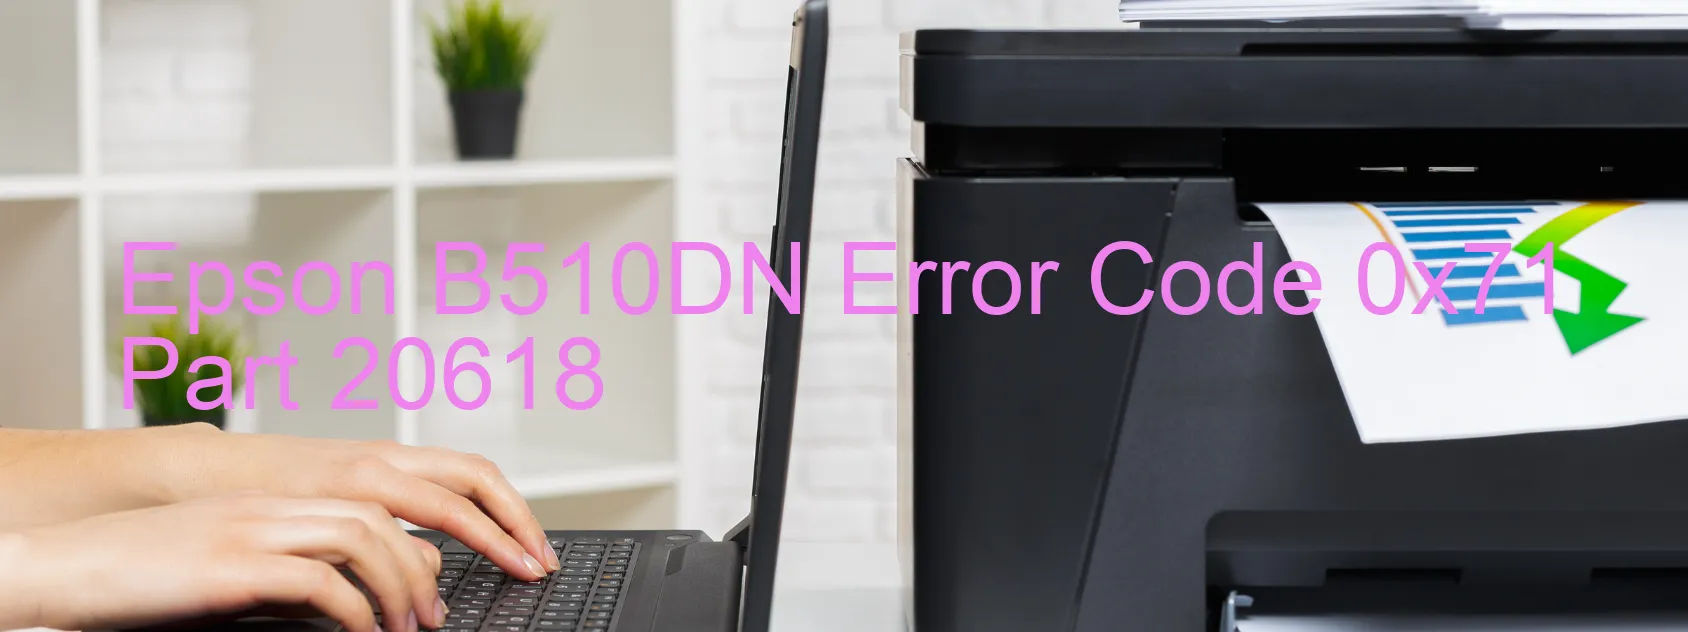 Epson B510DN Fehlercode 0x71